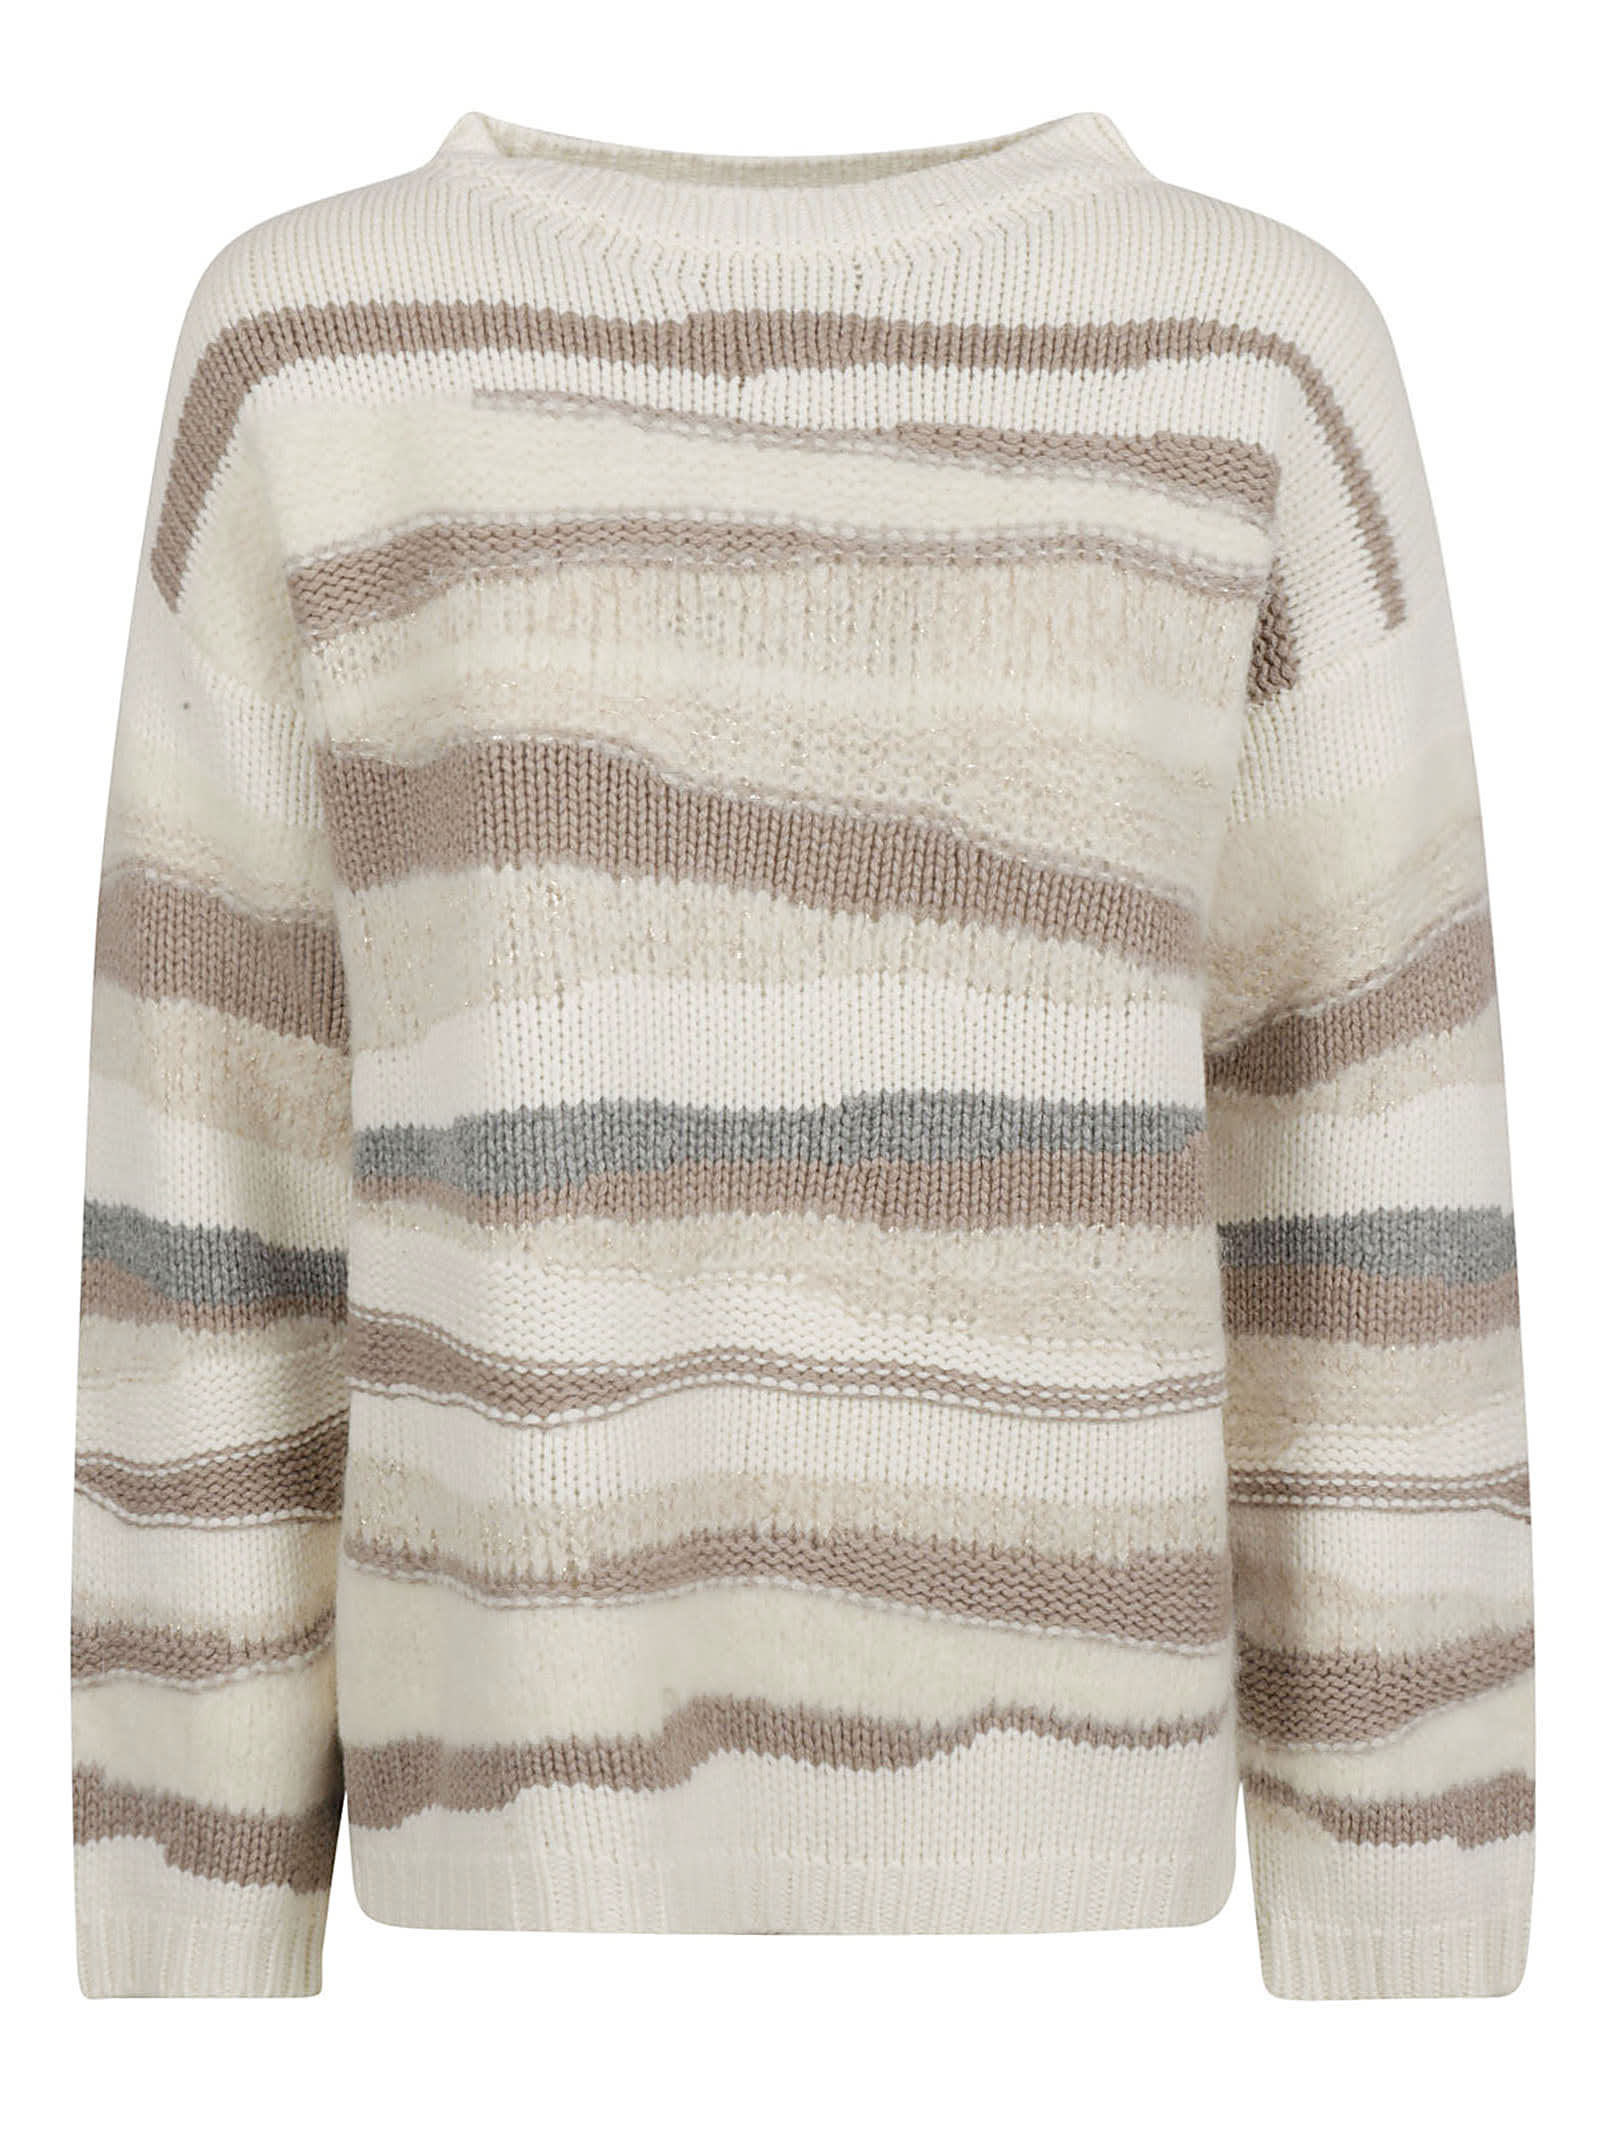 Stripe Patterned Knit Sweater